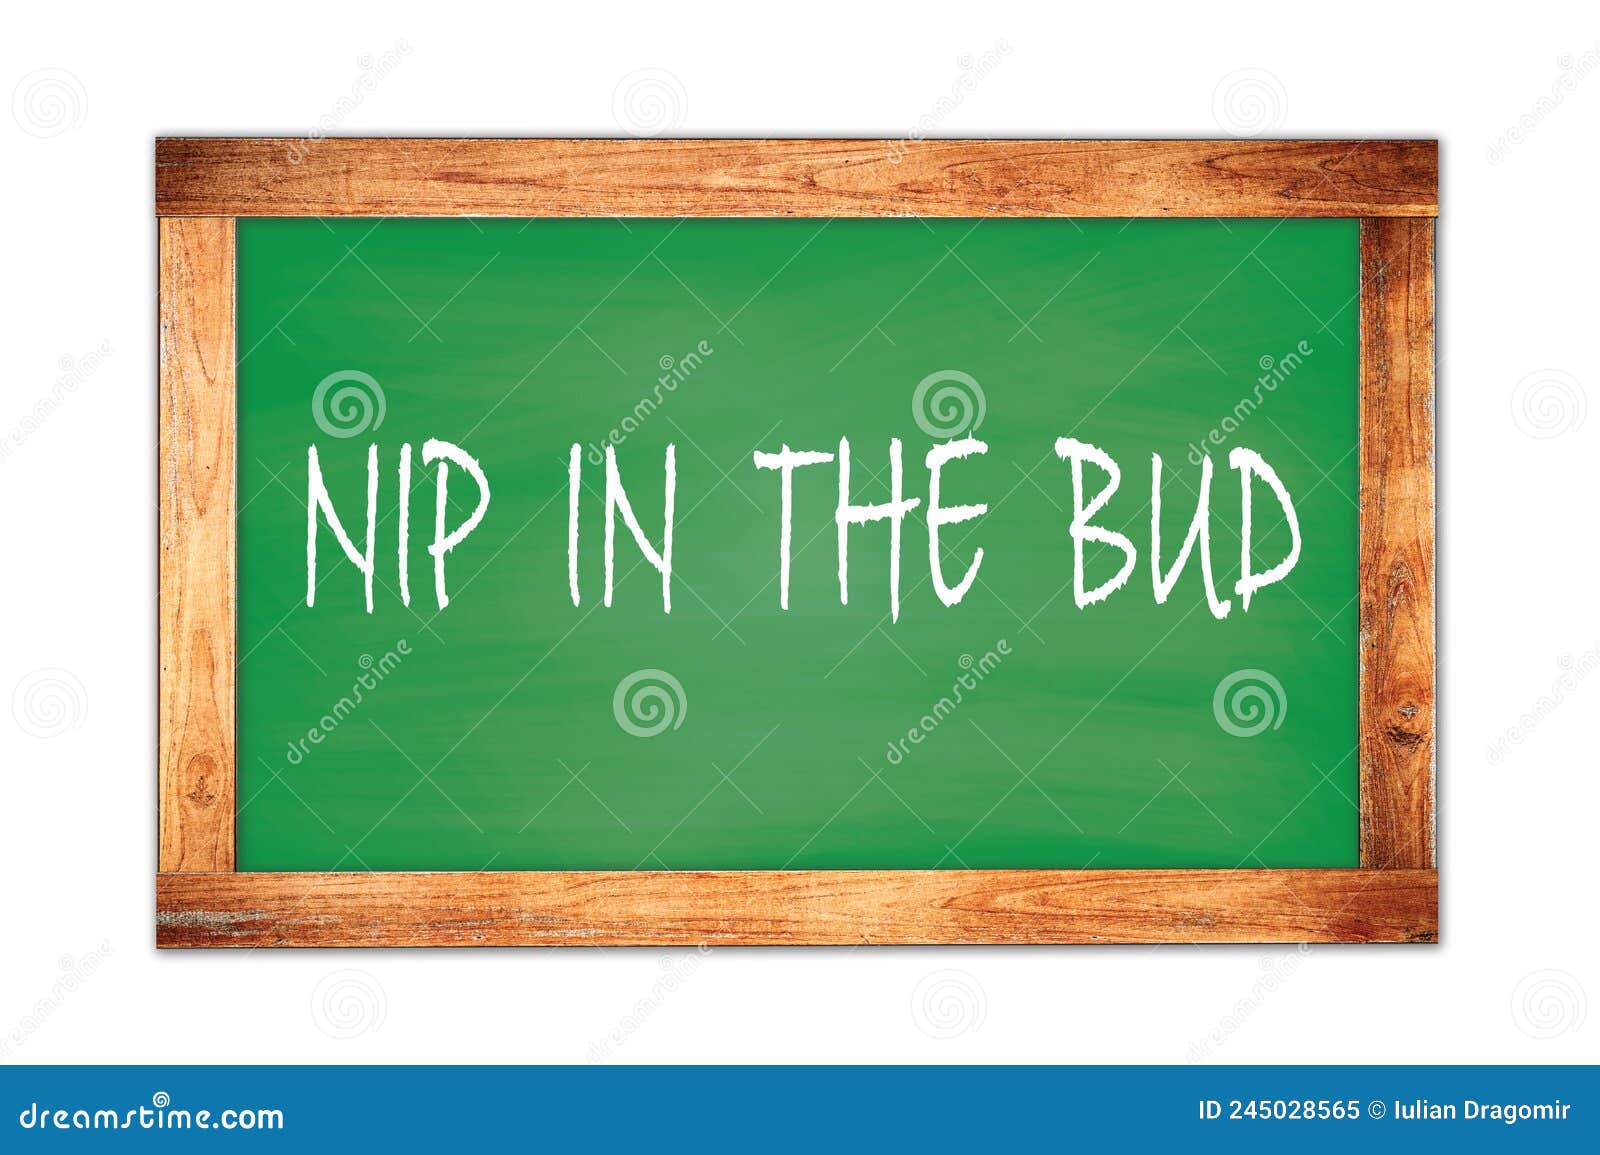 nip  in  the  bud text written on green school board